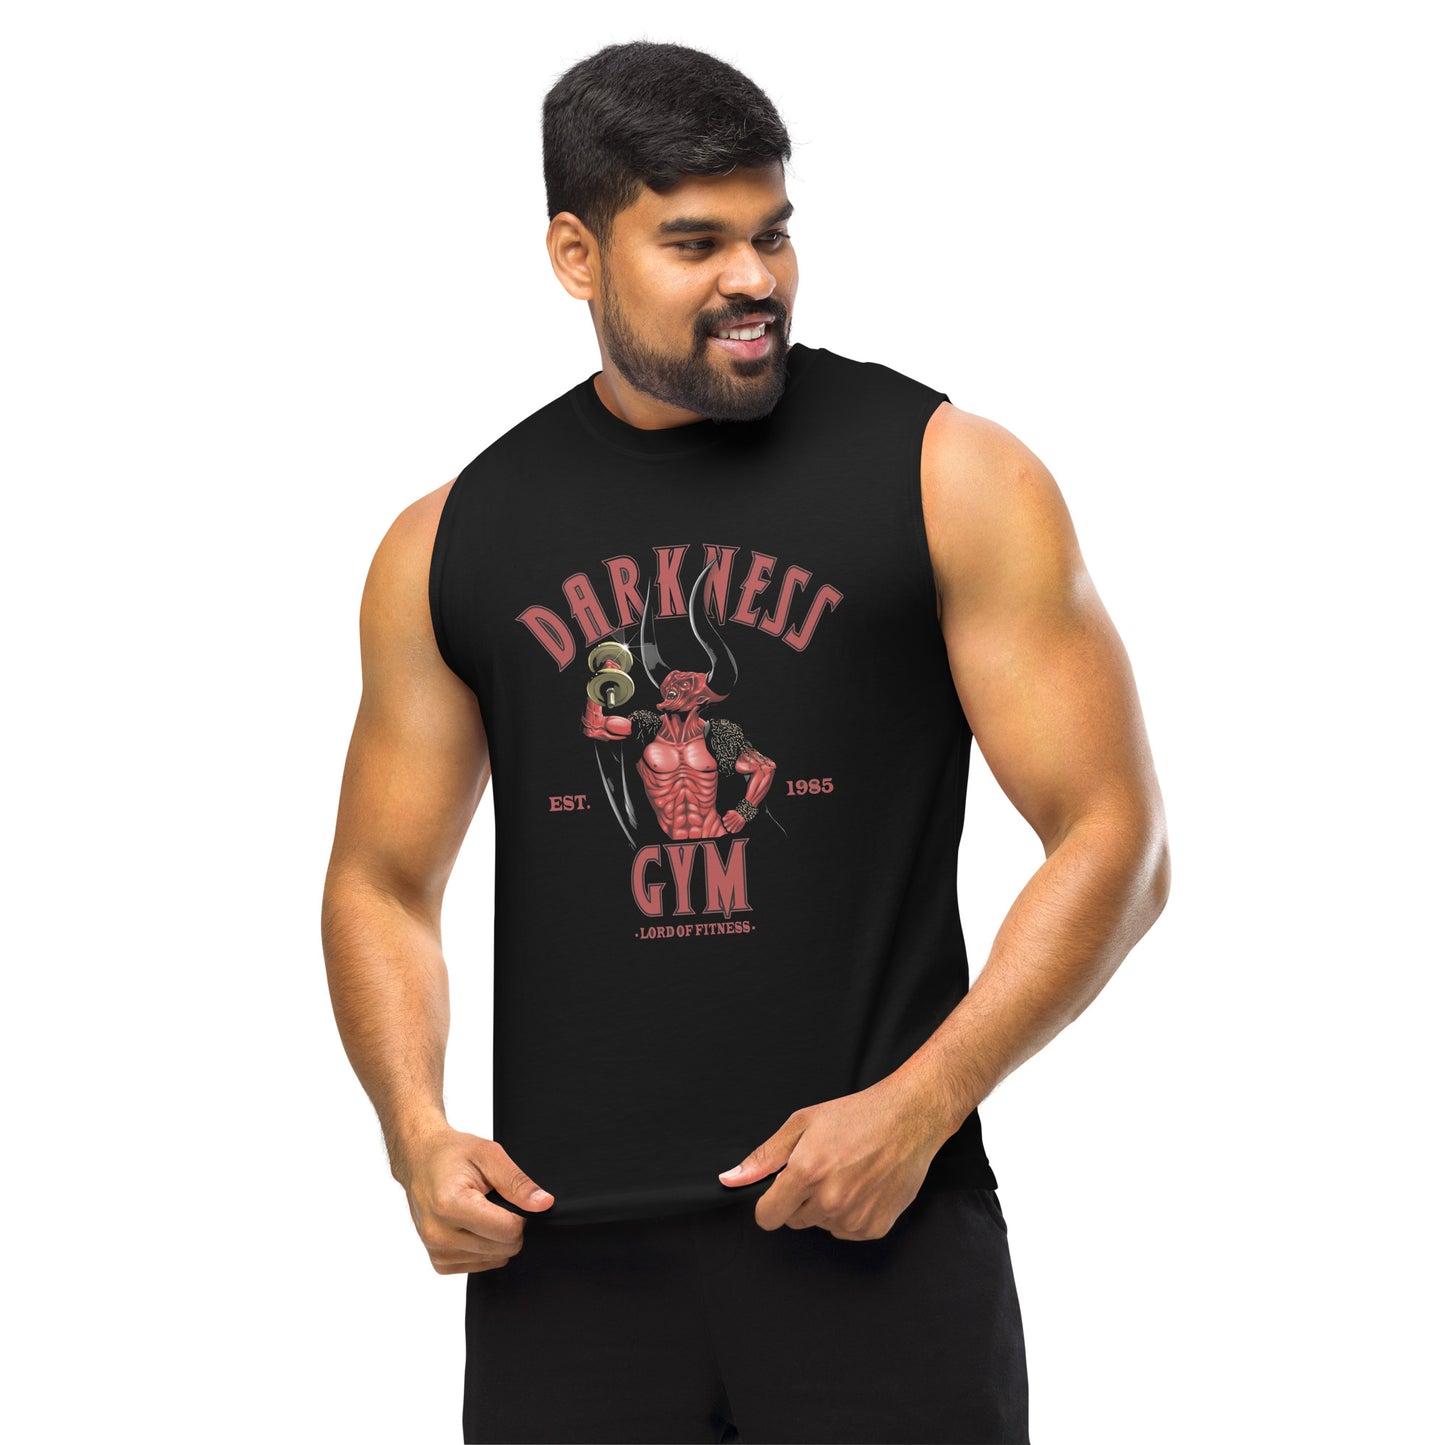 Camiseta sin mangas perfecta para entrenar, Camiseta Darkness Gym compra en línea y experimenta el mejor servicio al cliente. envíos internacionales.\